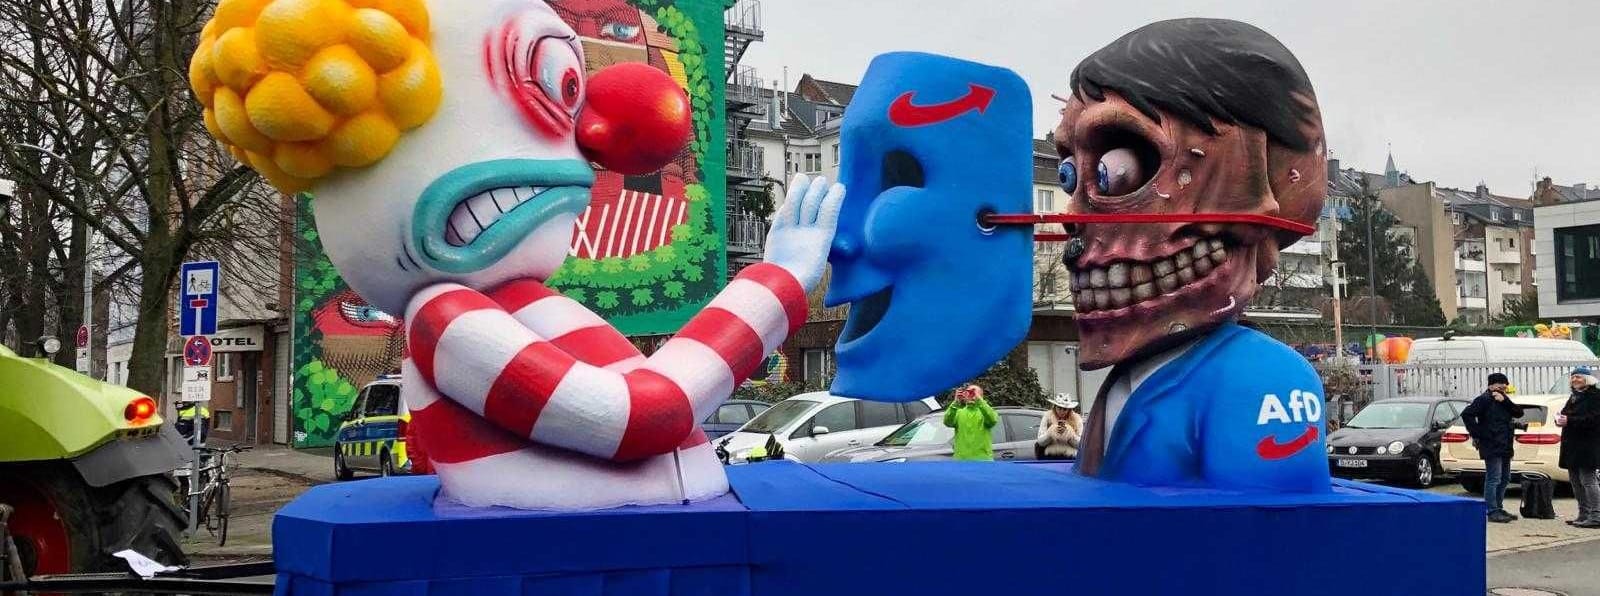 Bei der AfD fällt die Maske und die Karnevalisten entdecken dahinter mit großer Ablehnung Adolf Hitler.